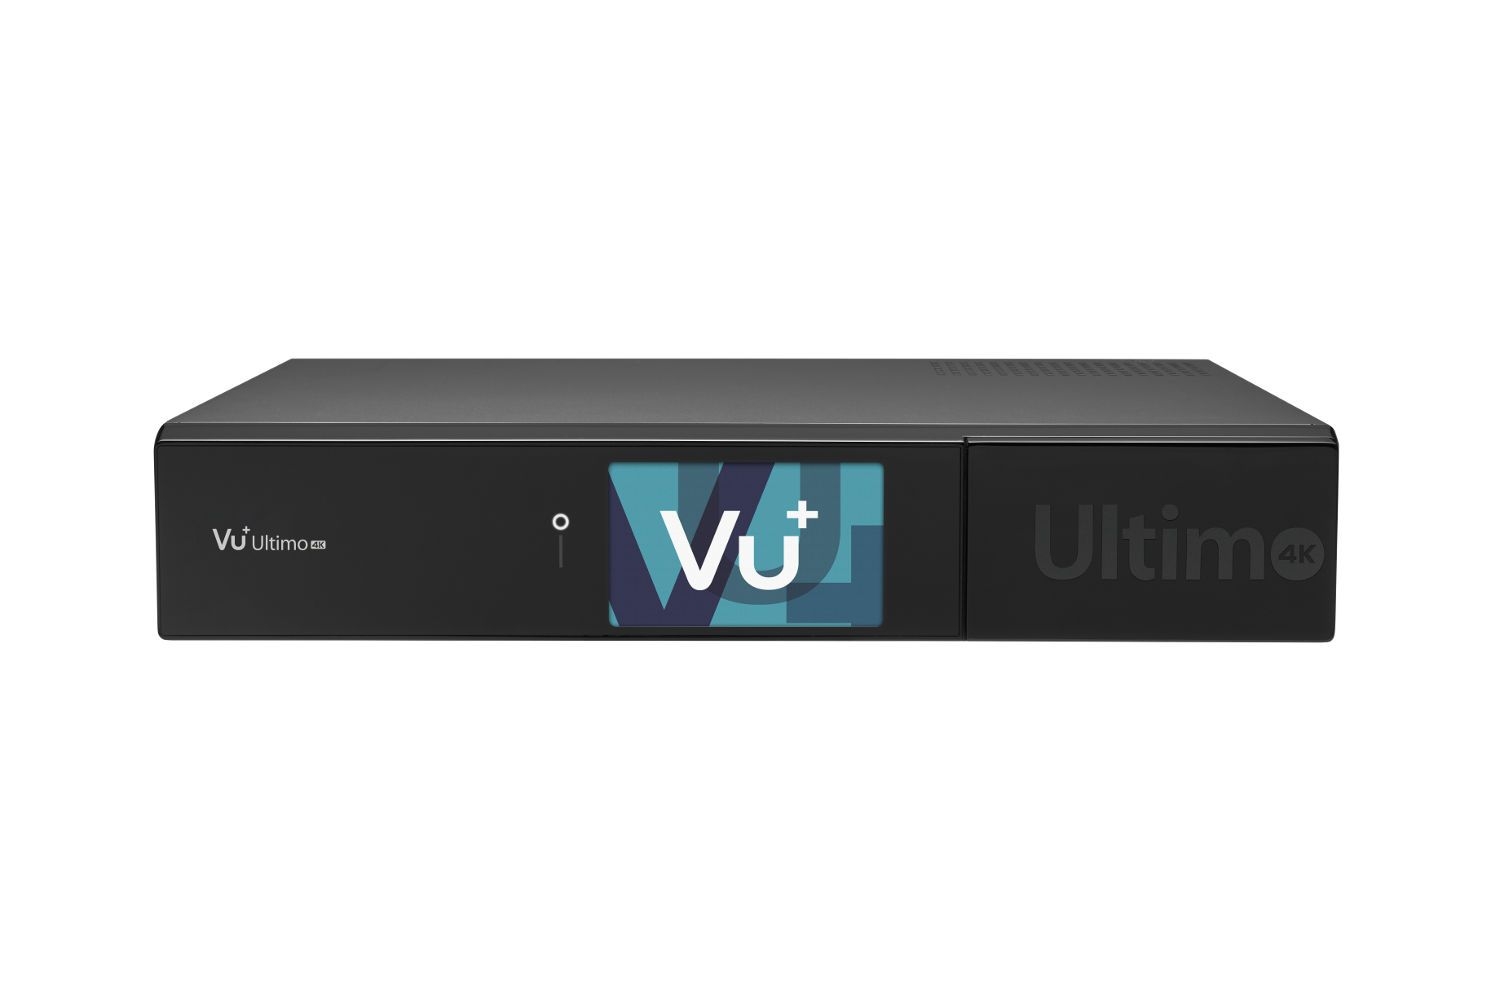 VU+ Ultimo 4K 1x DVB-T2 Dual Tuner 6 TB HDD Linux Receiver UHD 2160p